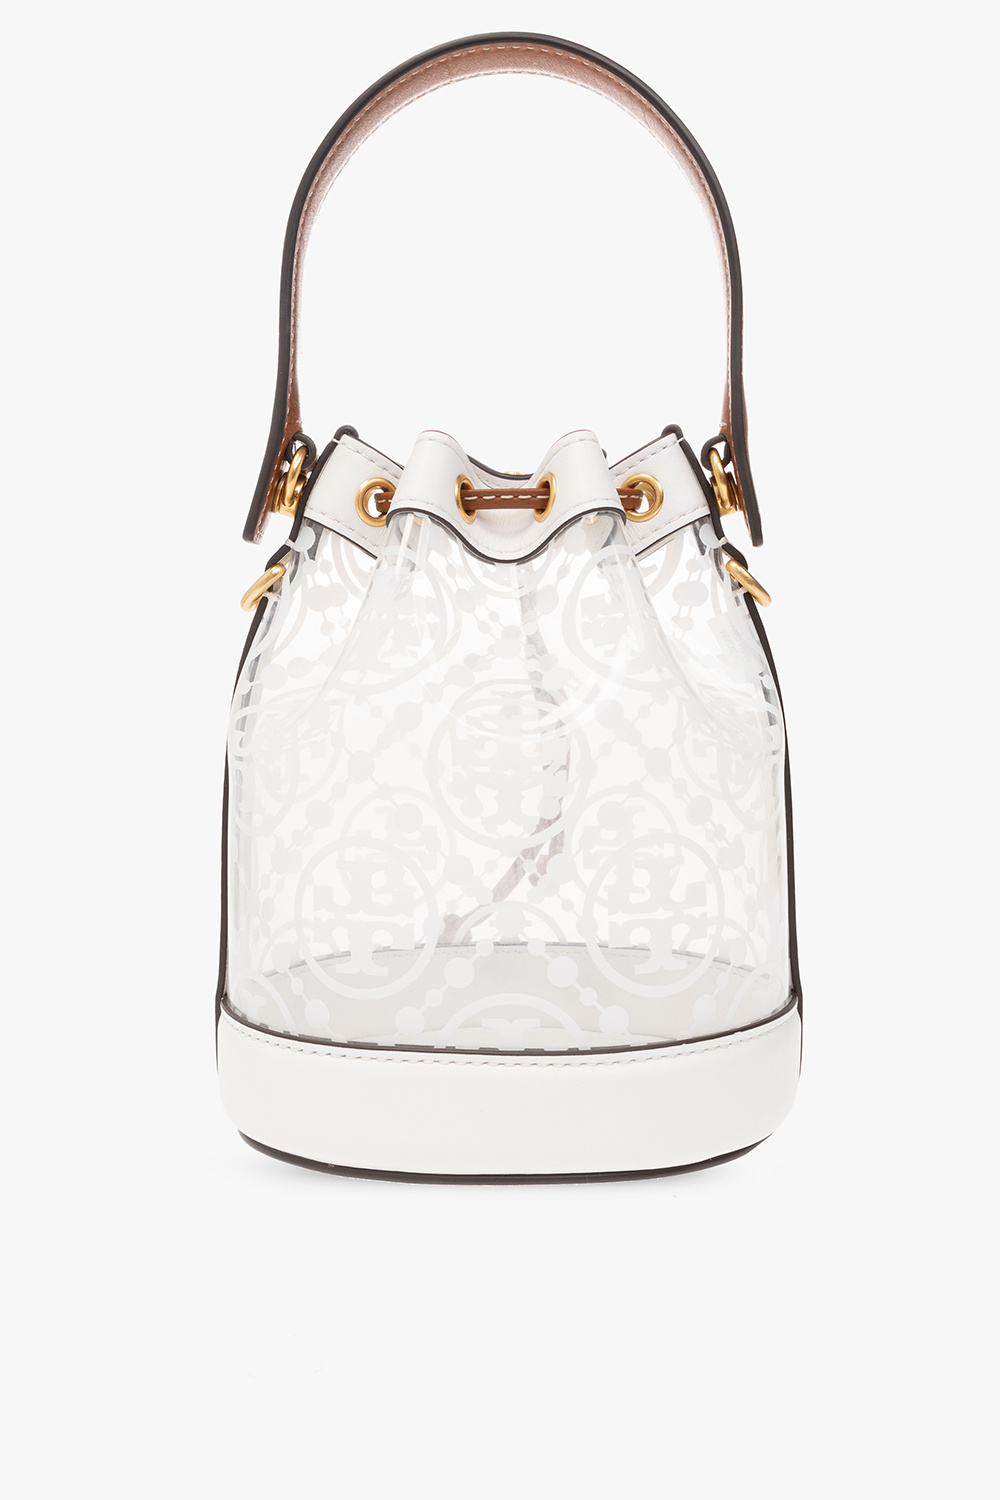 Tory Burch ‘T Monogram Mini’ Bucket Bag Women's Cream | Vitkac